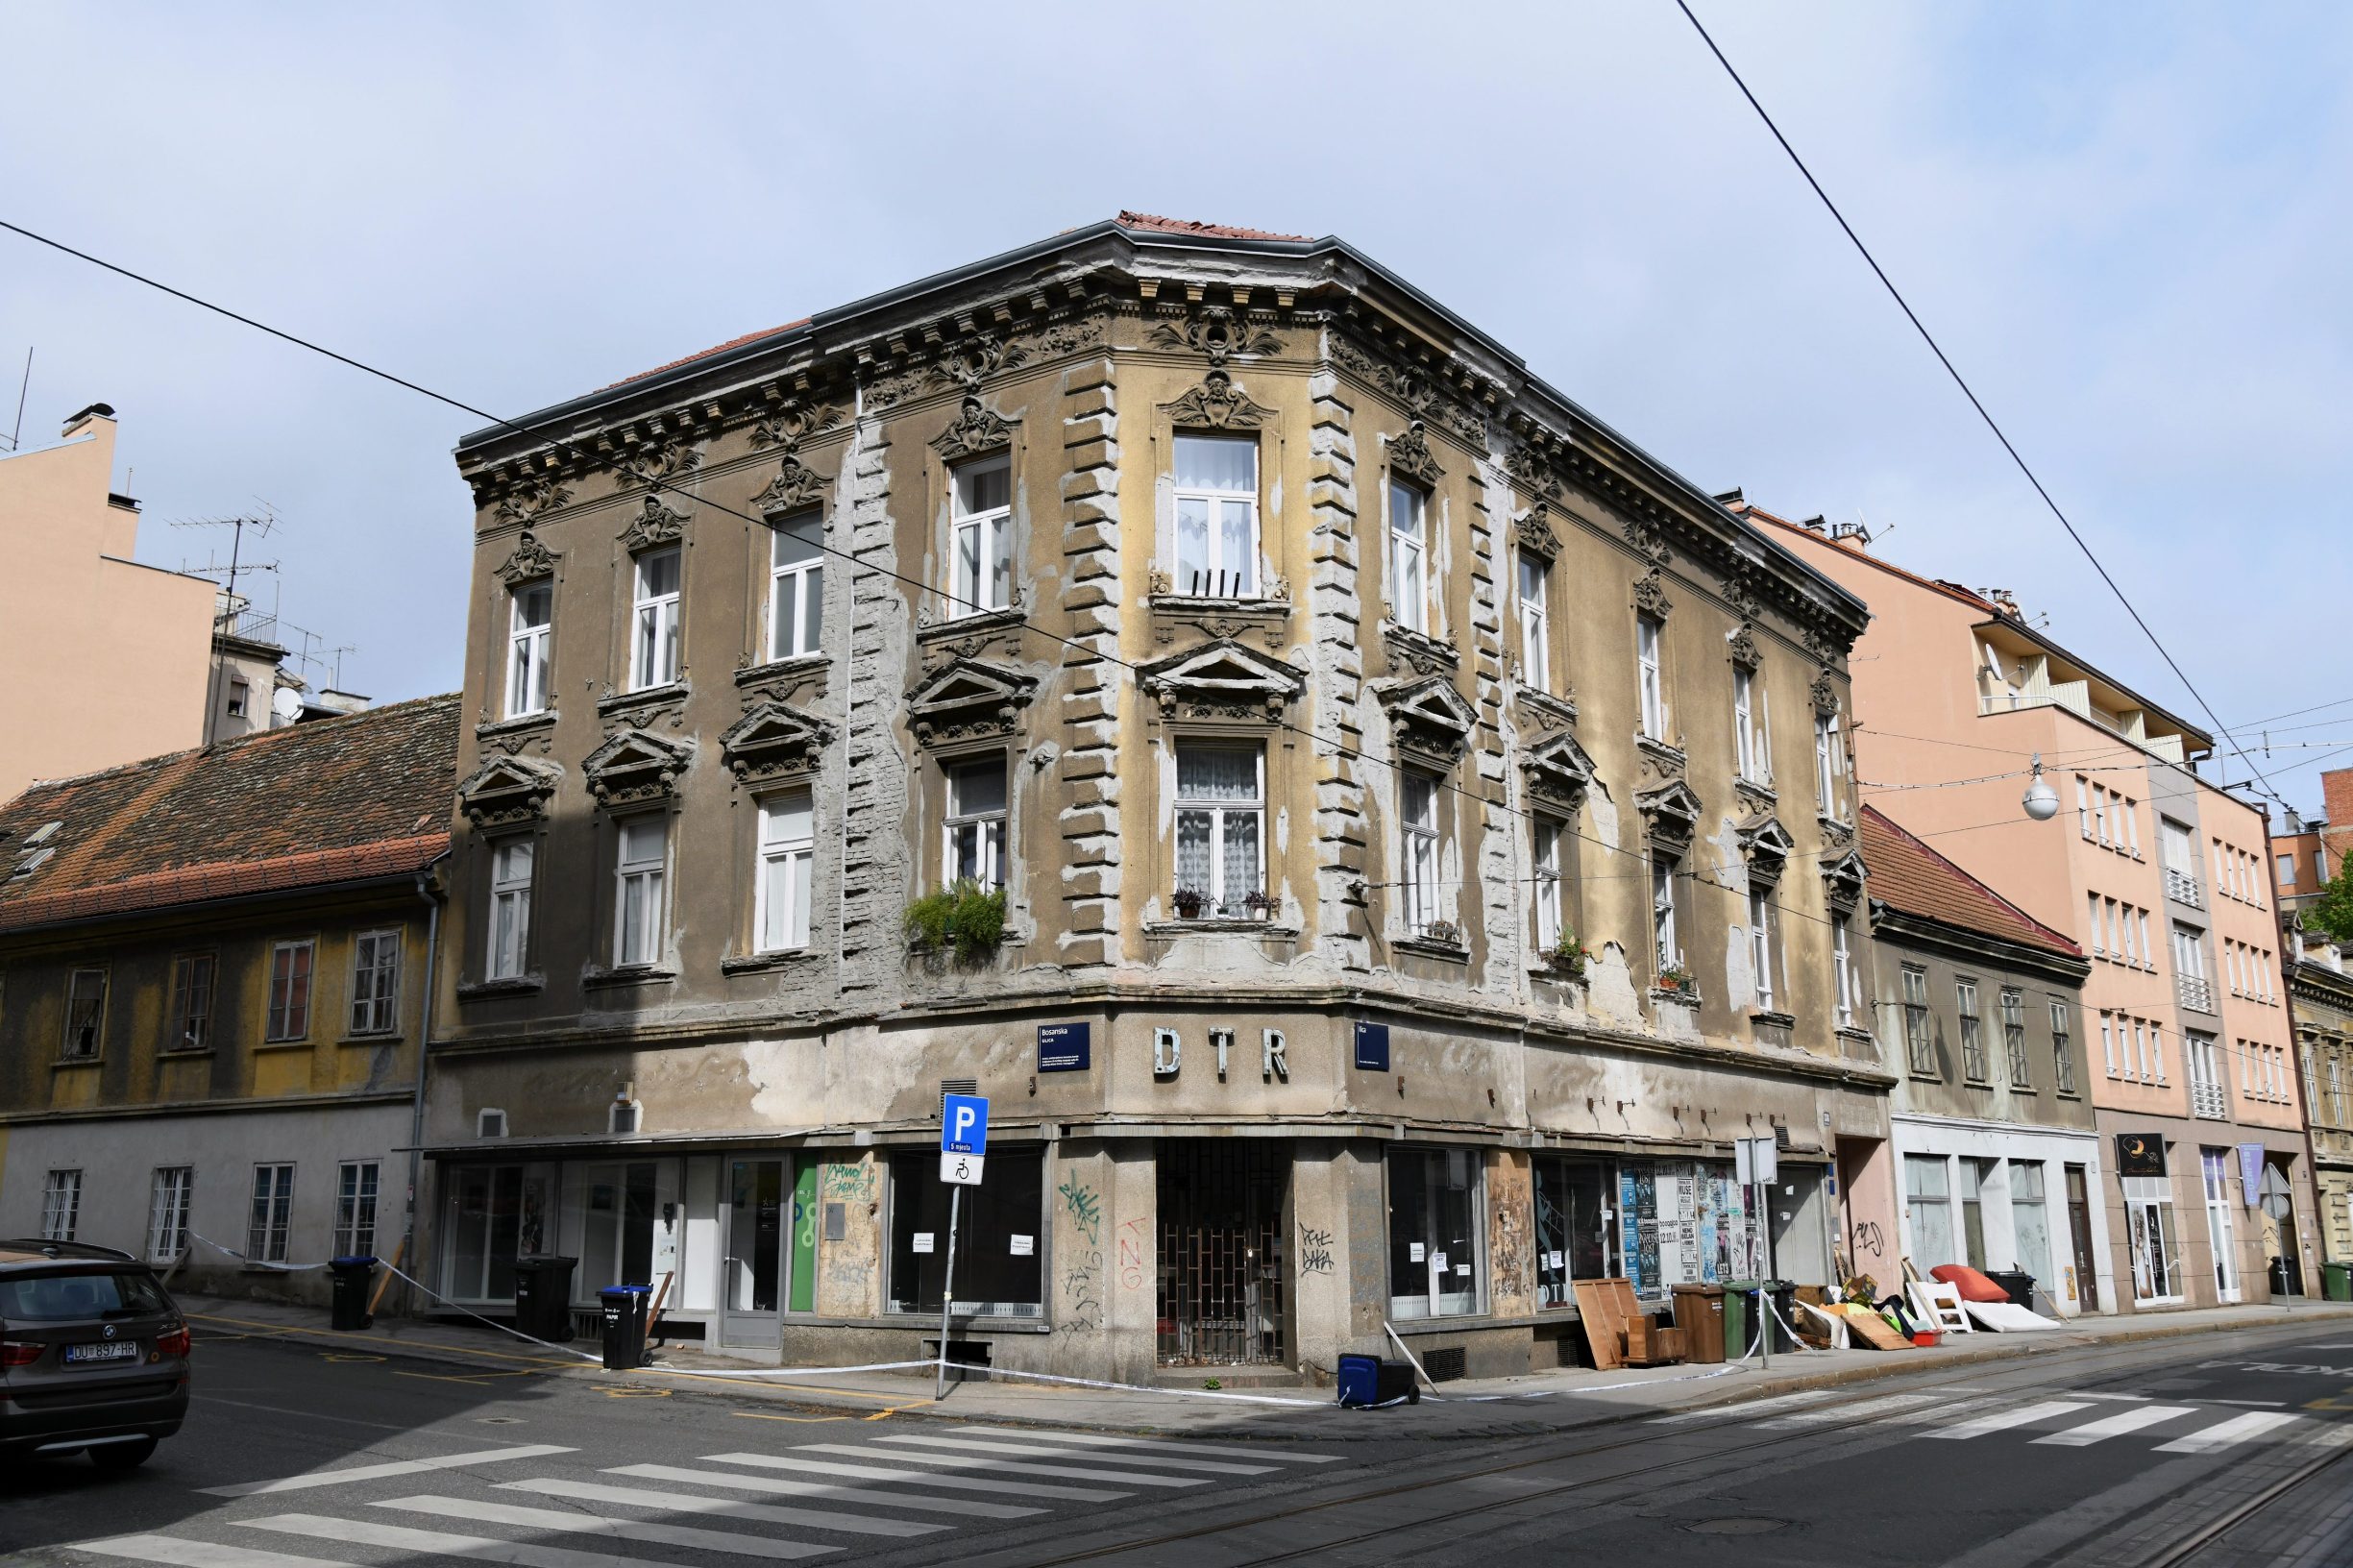 Zagreb, 140420
Ilica 138.
Posljedice potresa na zgradi koja se nalazi na krizanju ilice i Bosanske.
Foto: Srdjan Vrancic / CROPIX

